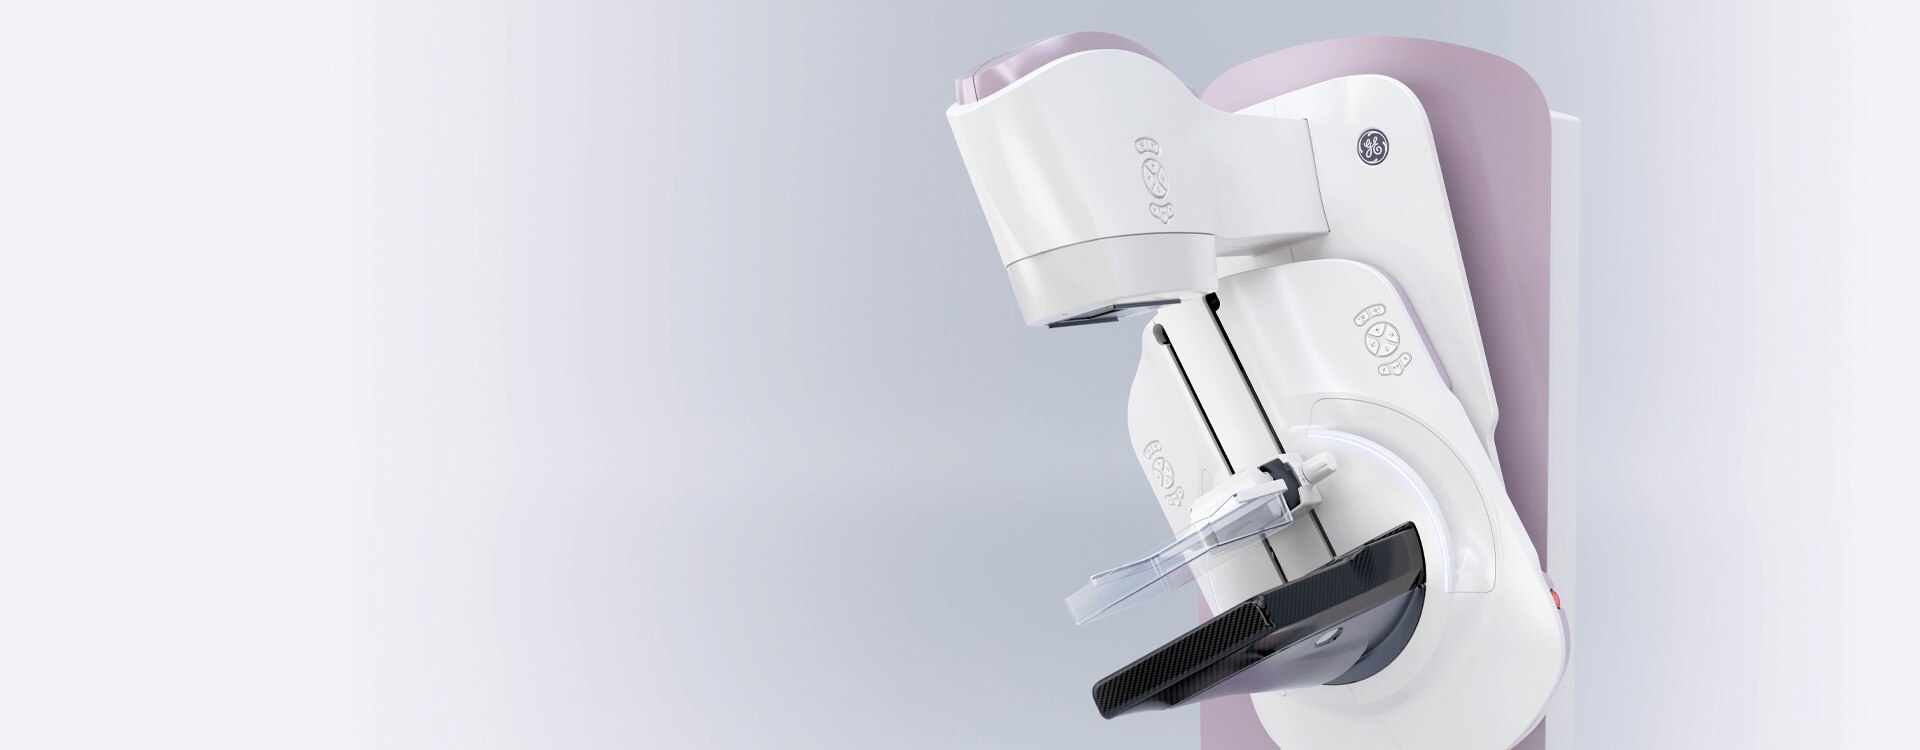 高品質得価マンモグラフィ 装置 GE横河 乳房 X線撮影 セノグラフDMR+ 放射線 レントゲン 乳腺外科 乳がん検診 GEヘルスケアジャパン その他